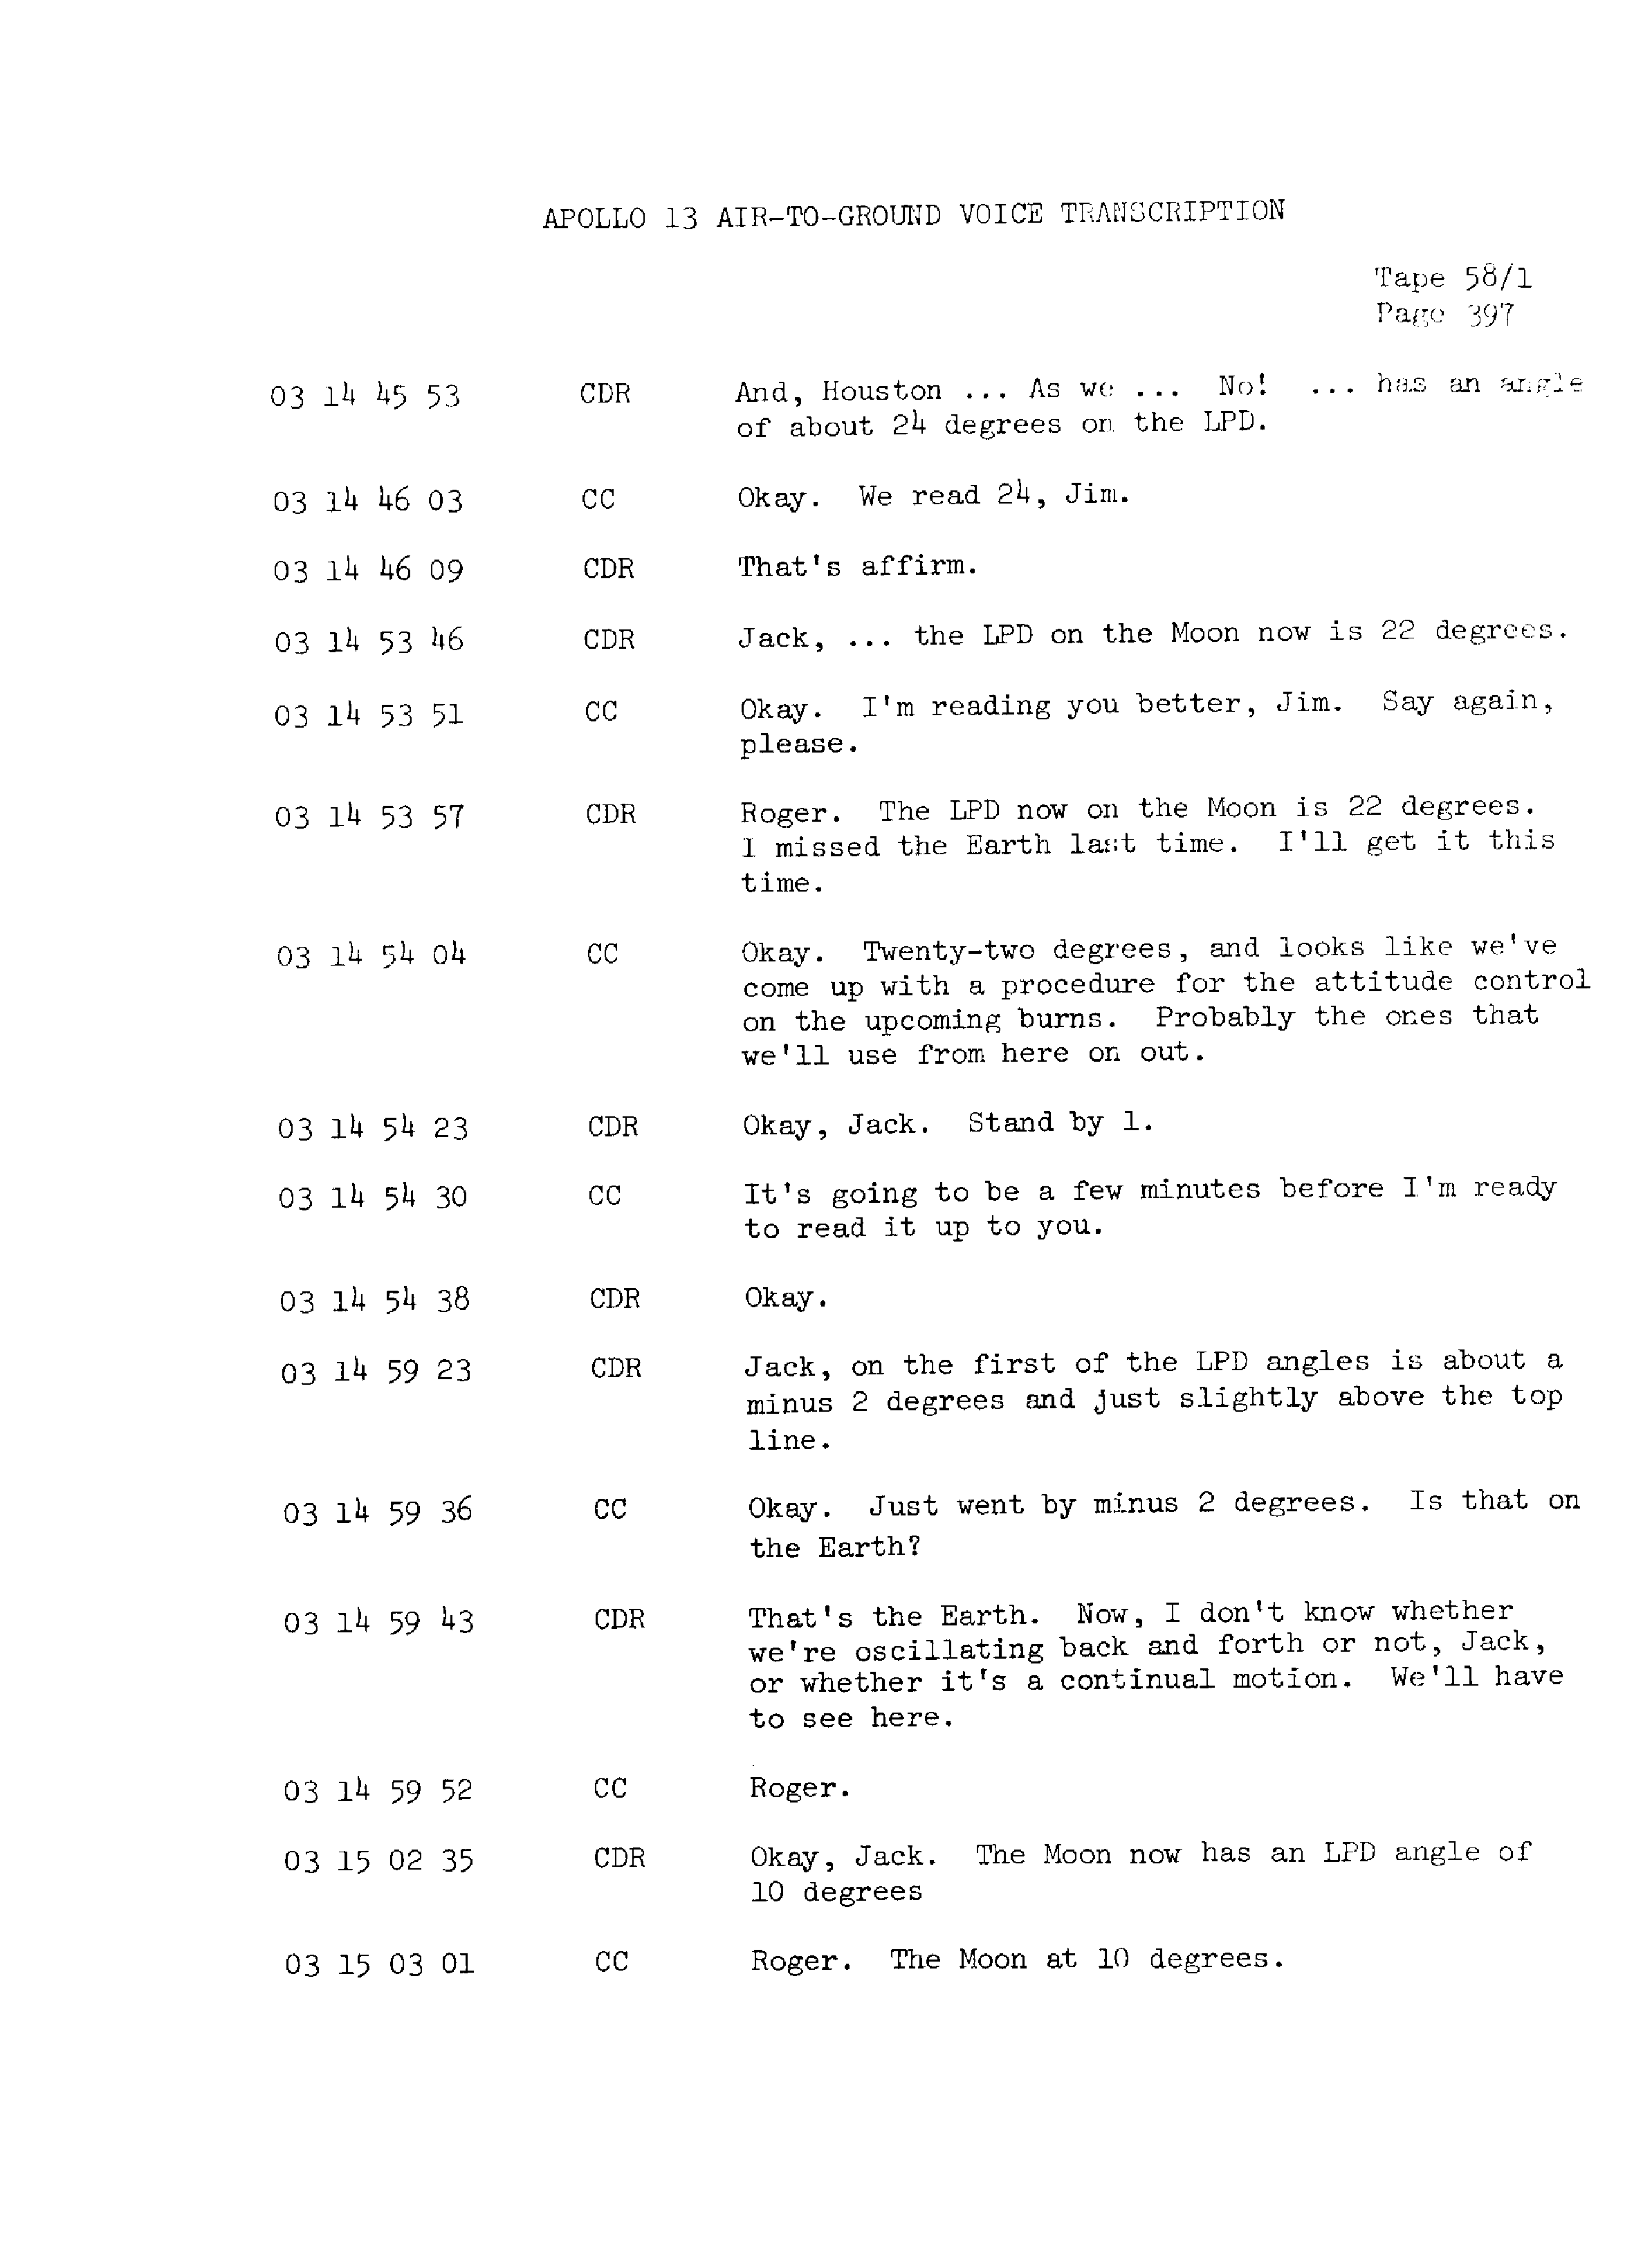 Page 404 of Apollo 13’s original transcript